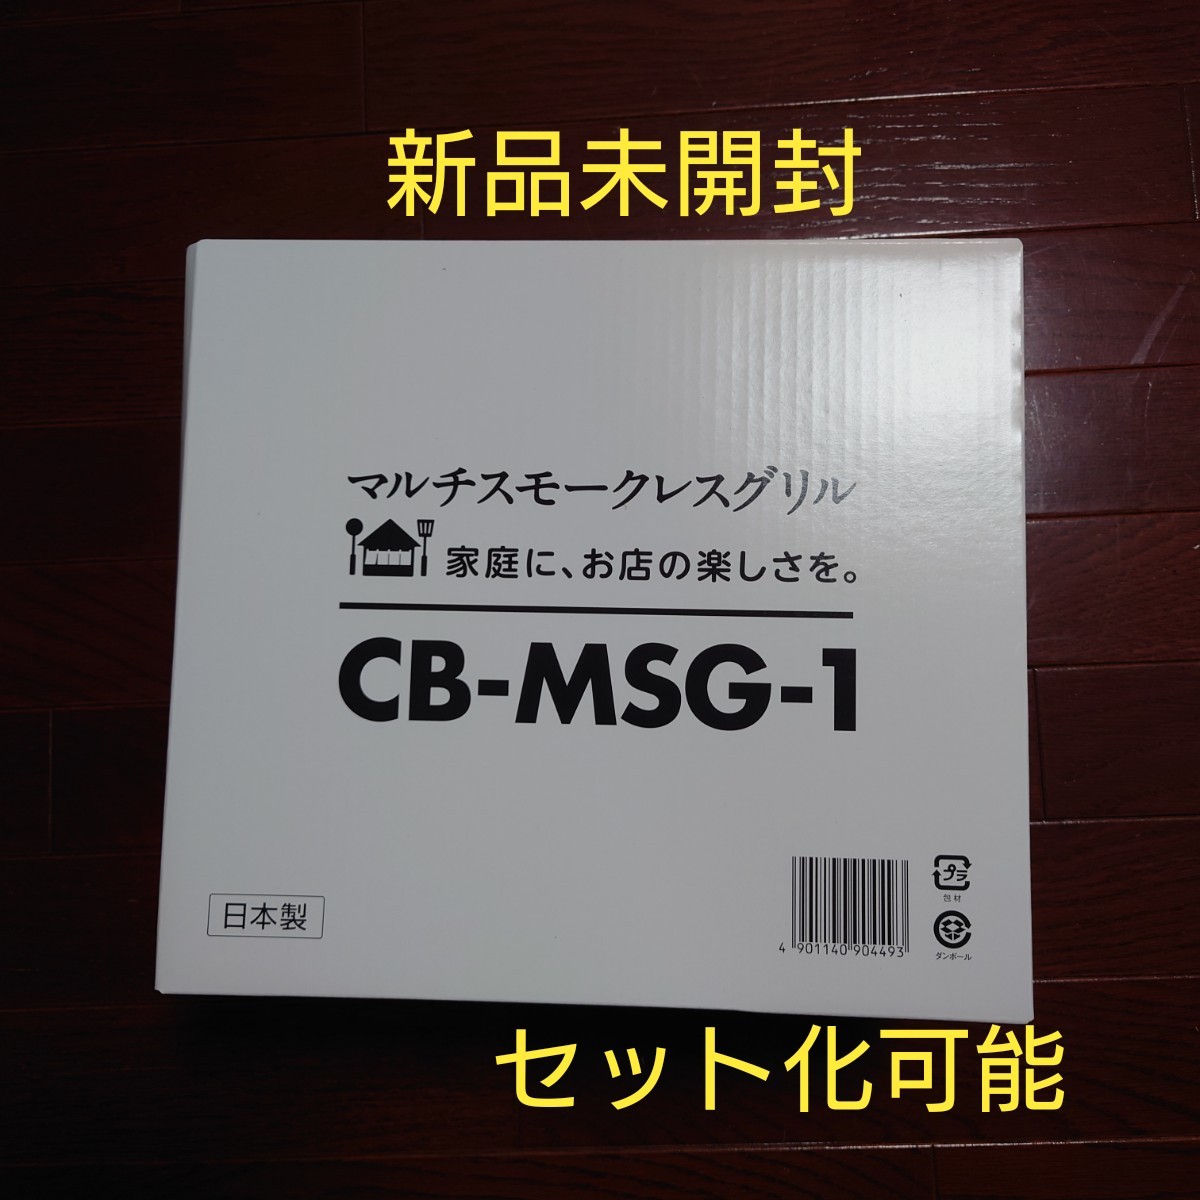 新品未開封】Iwatani マルチスモークレスグリル CB-MSG-1 キッチン家電